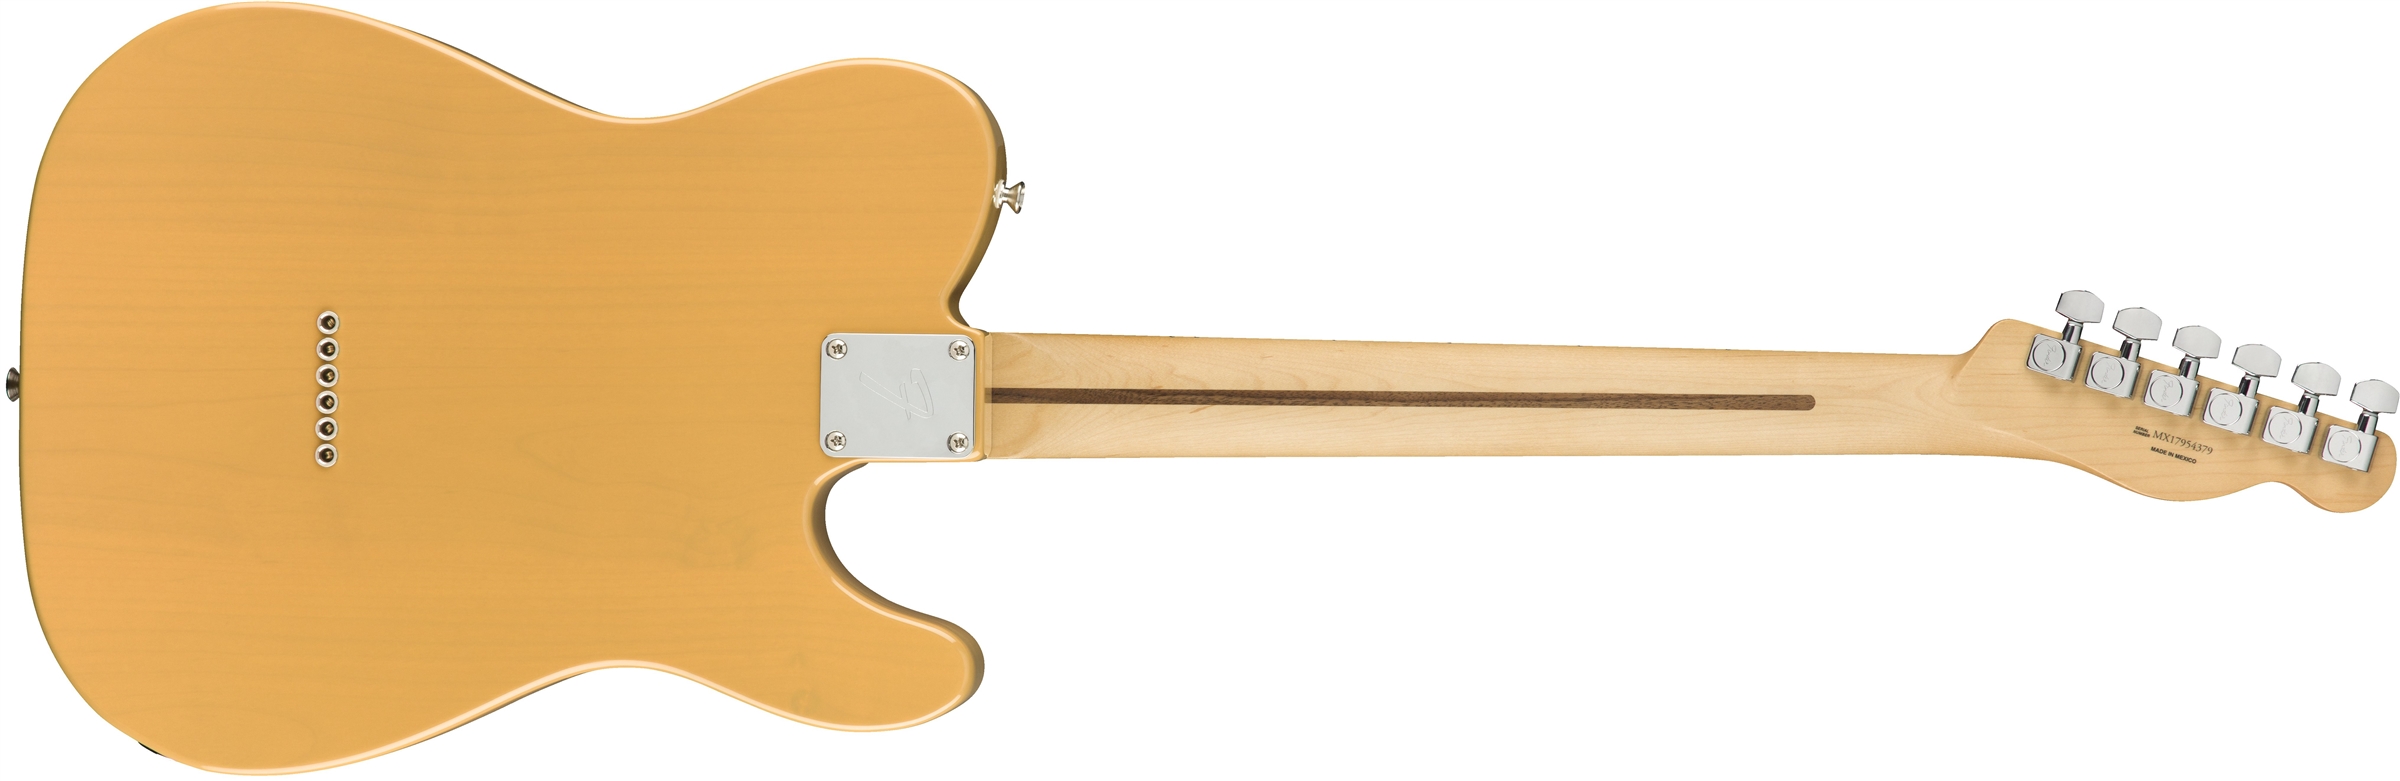 Fender Tele Player Lh Gaucher Mex 2s Mn - Butterscotch Blonde - Guitarra electrica para zurdos - Variation 1